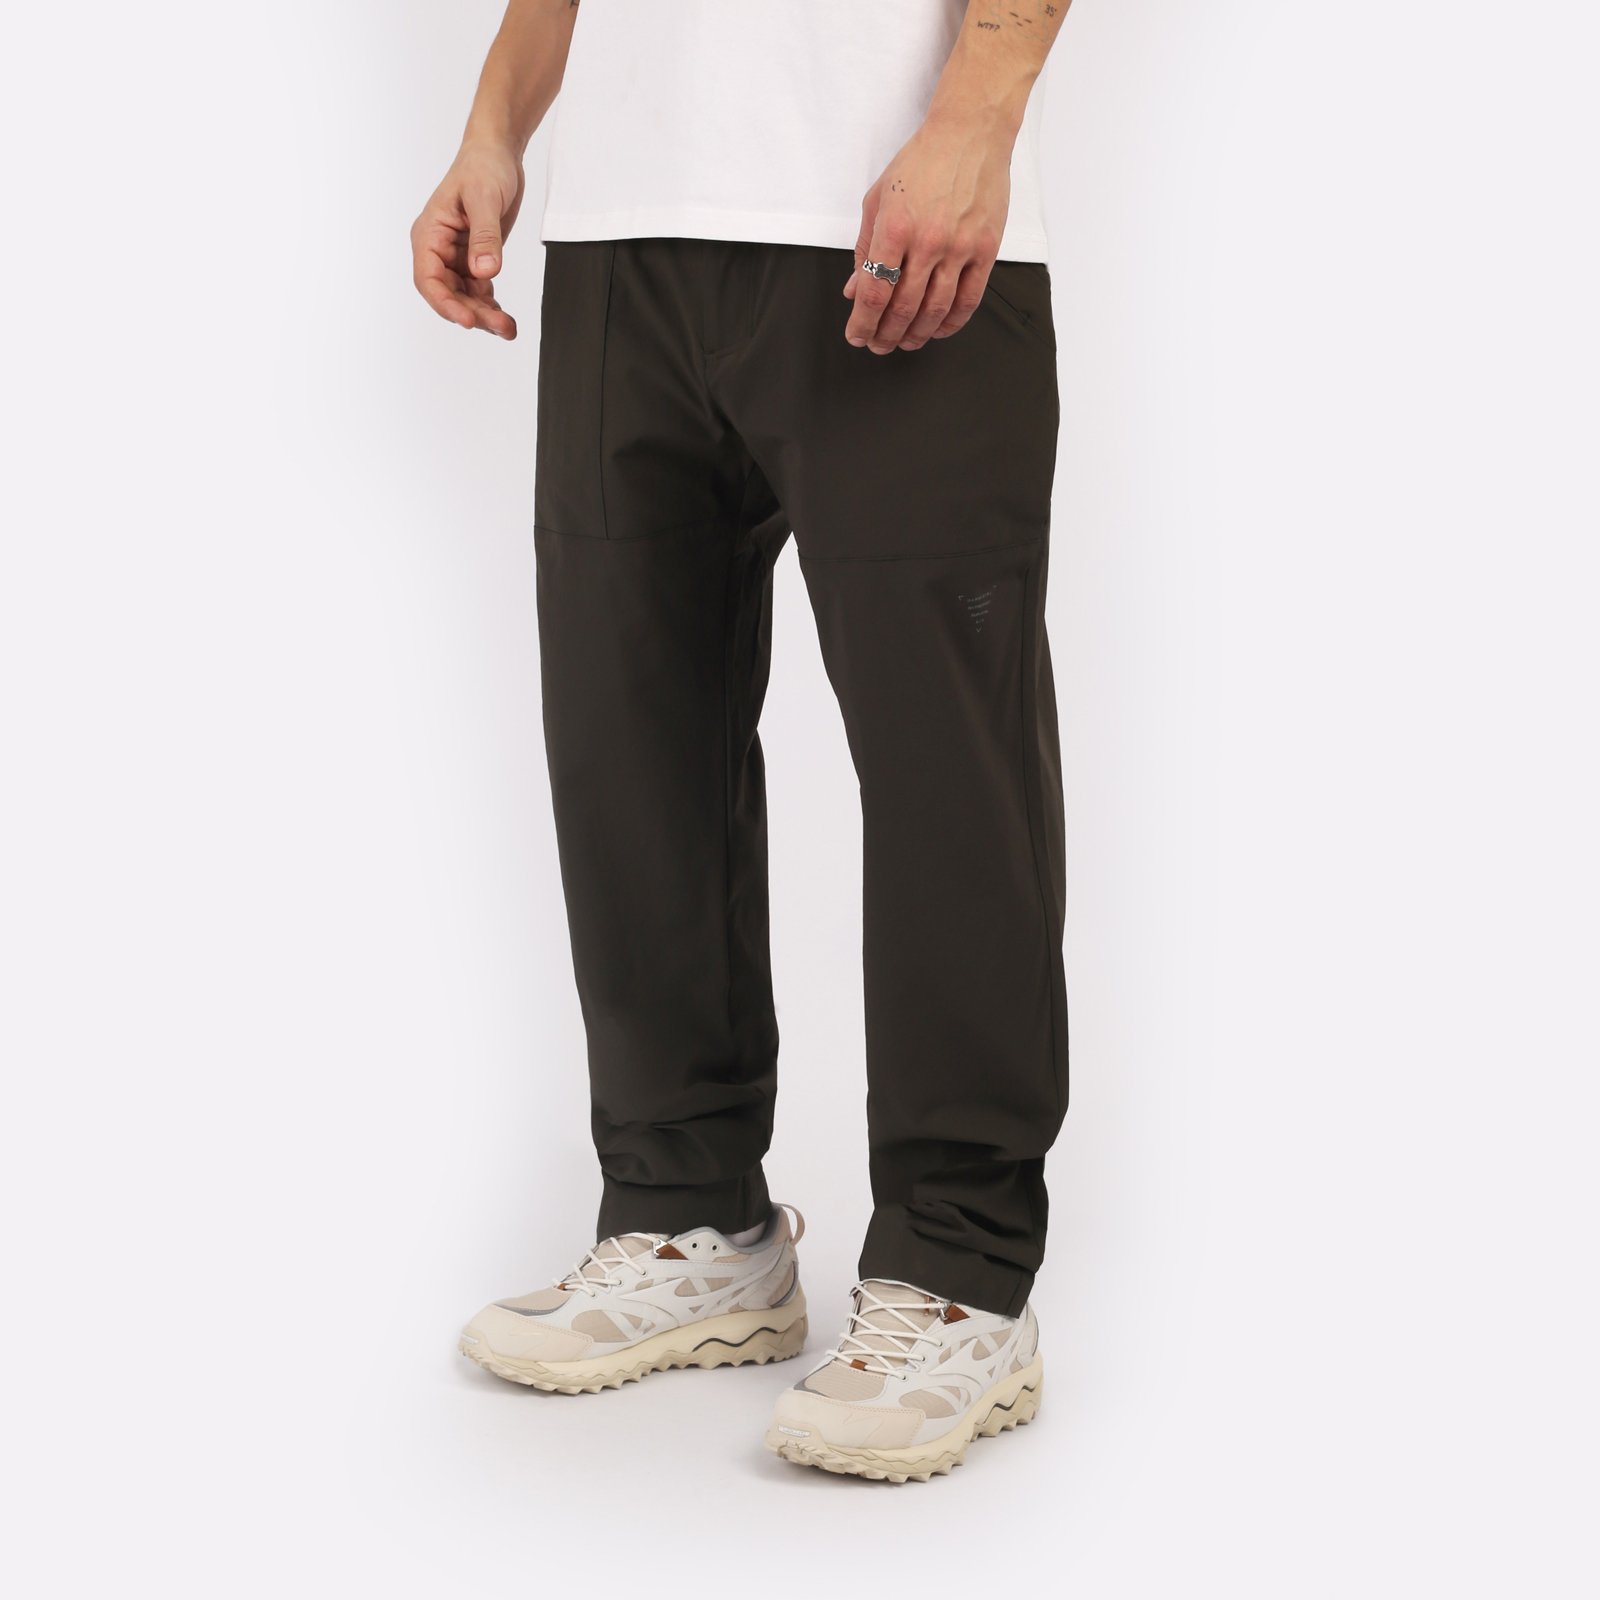 мужские брюки KRAKATAU Rm180-5  (Rm180-5-тем-зел)  - цена, описание, фото 3